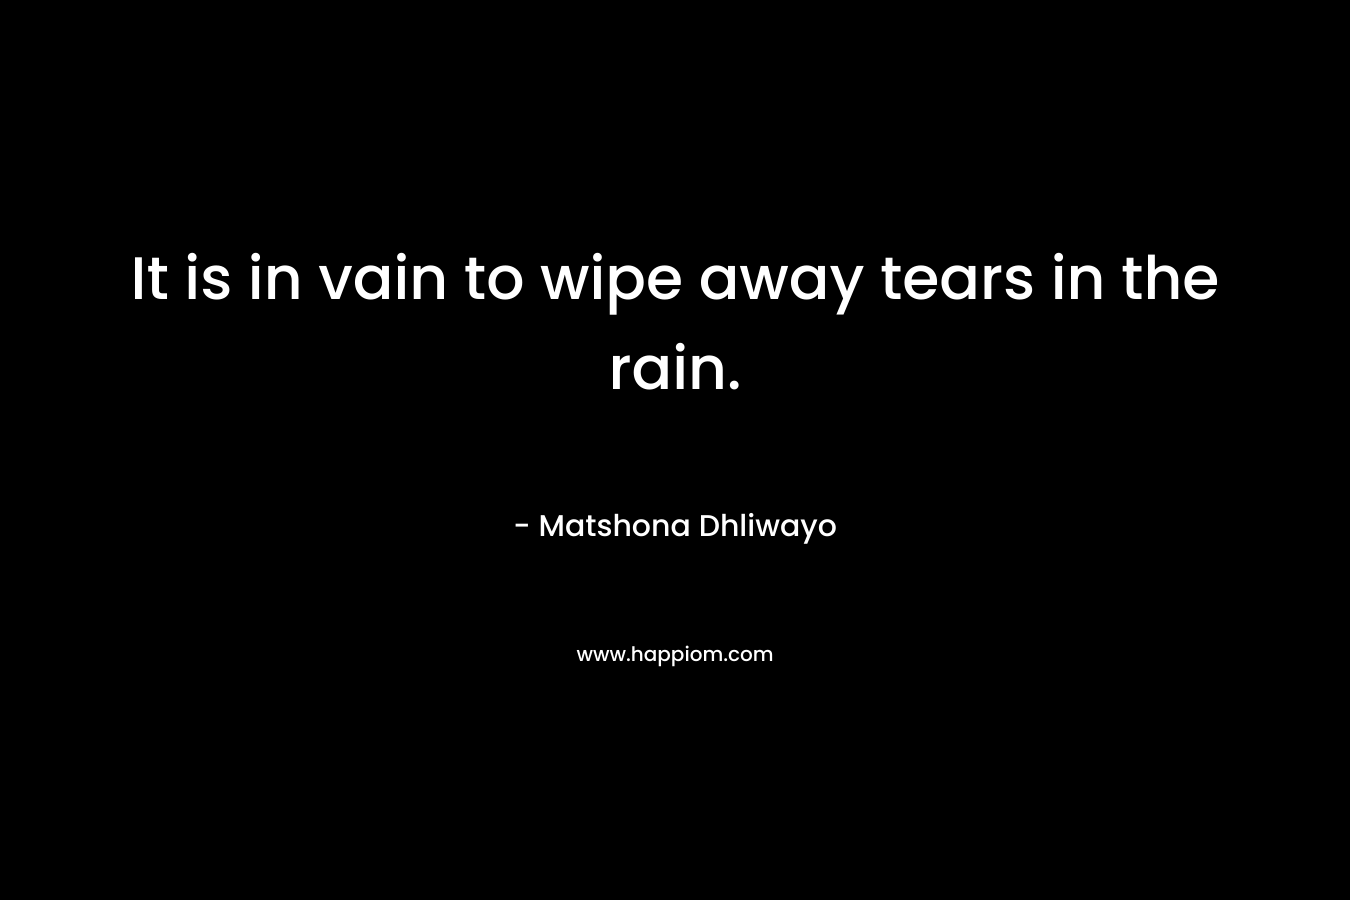 It is in vain to wipe away tears in the rain.